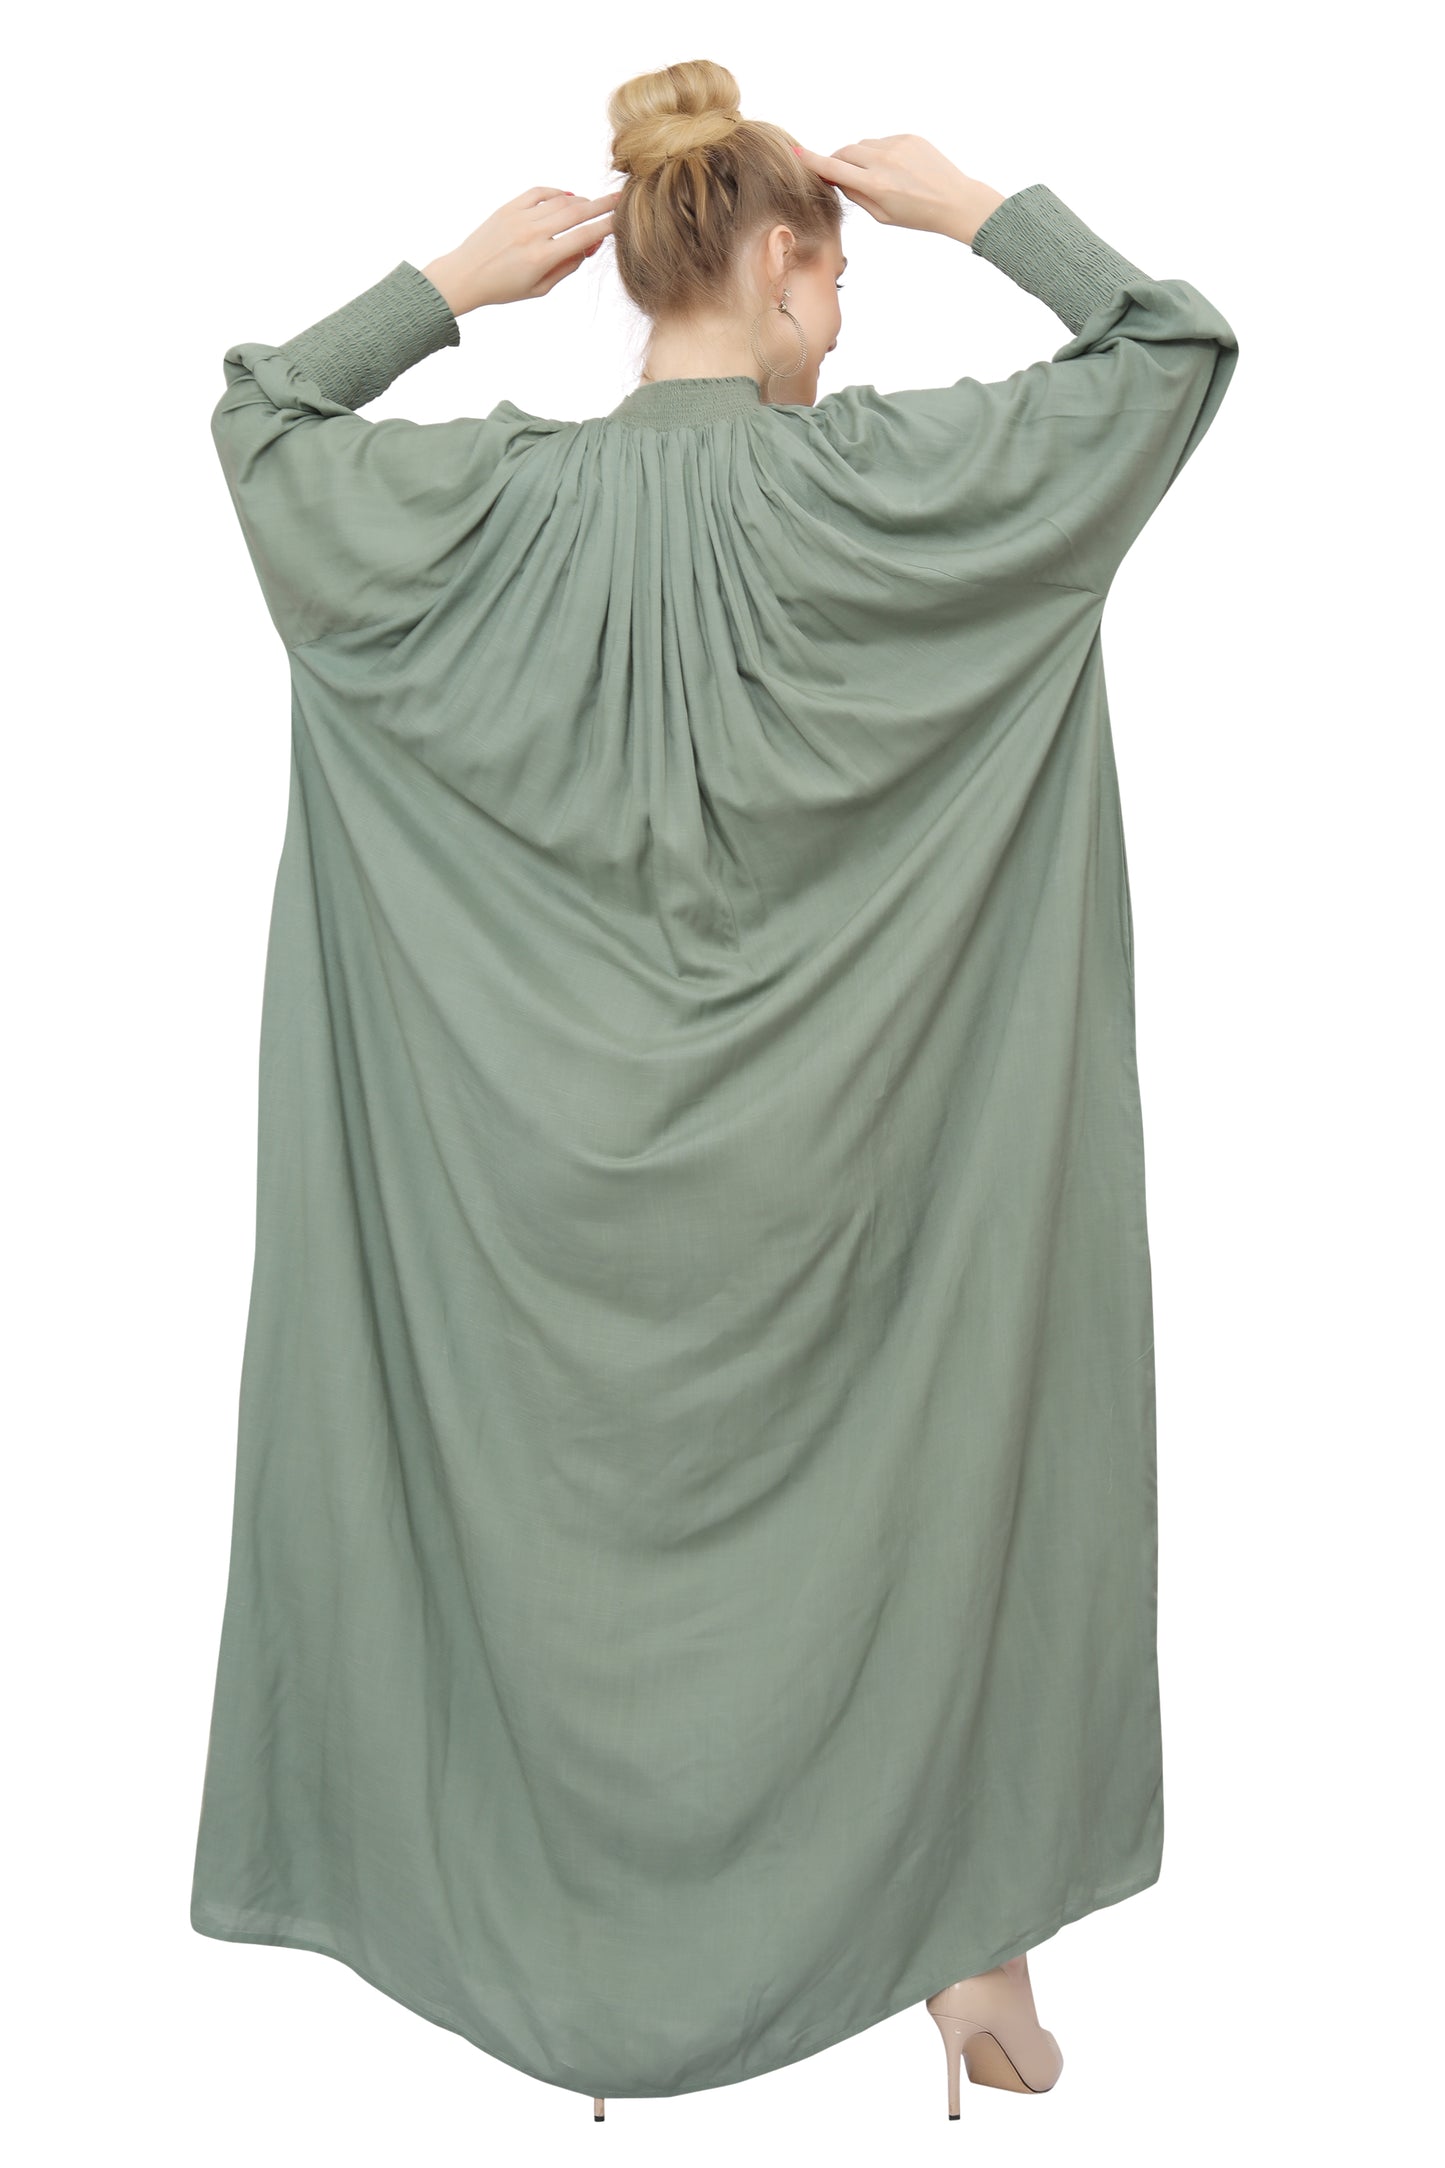 Kaftan Gown Teaparty Dress For Women